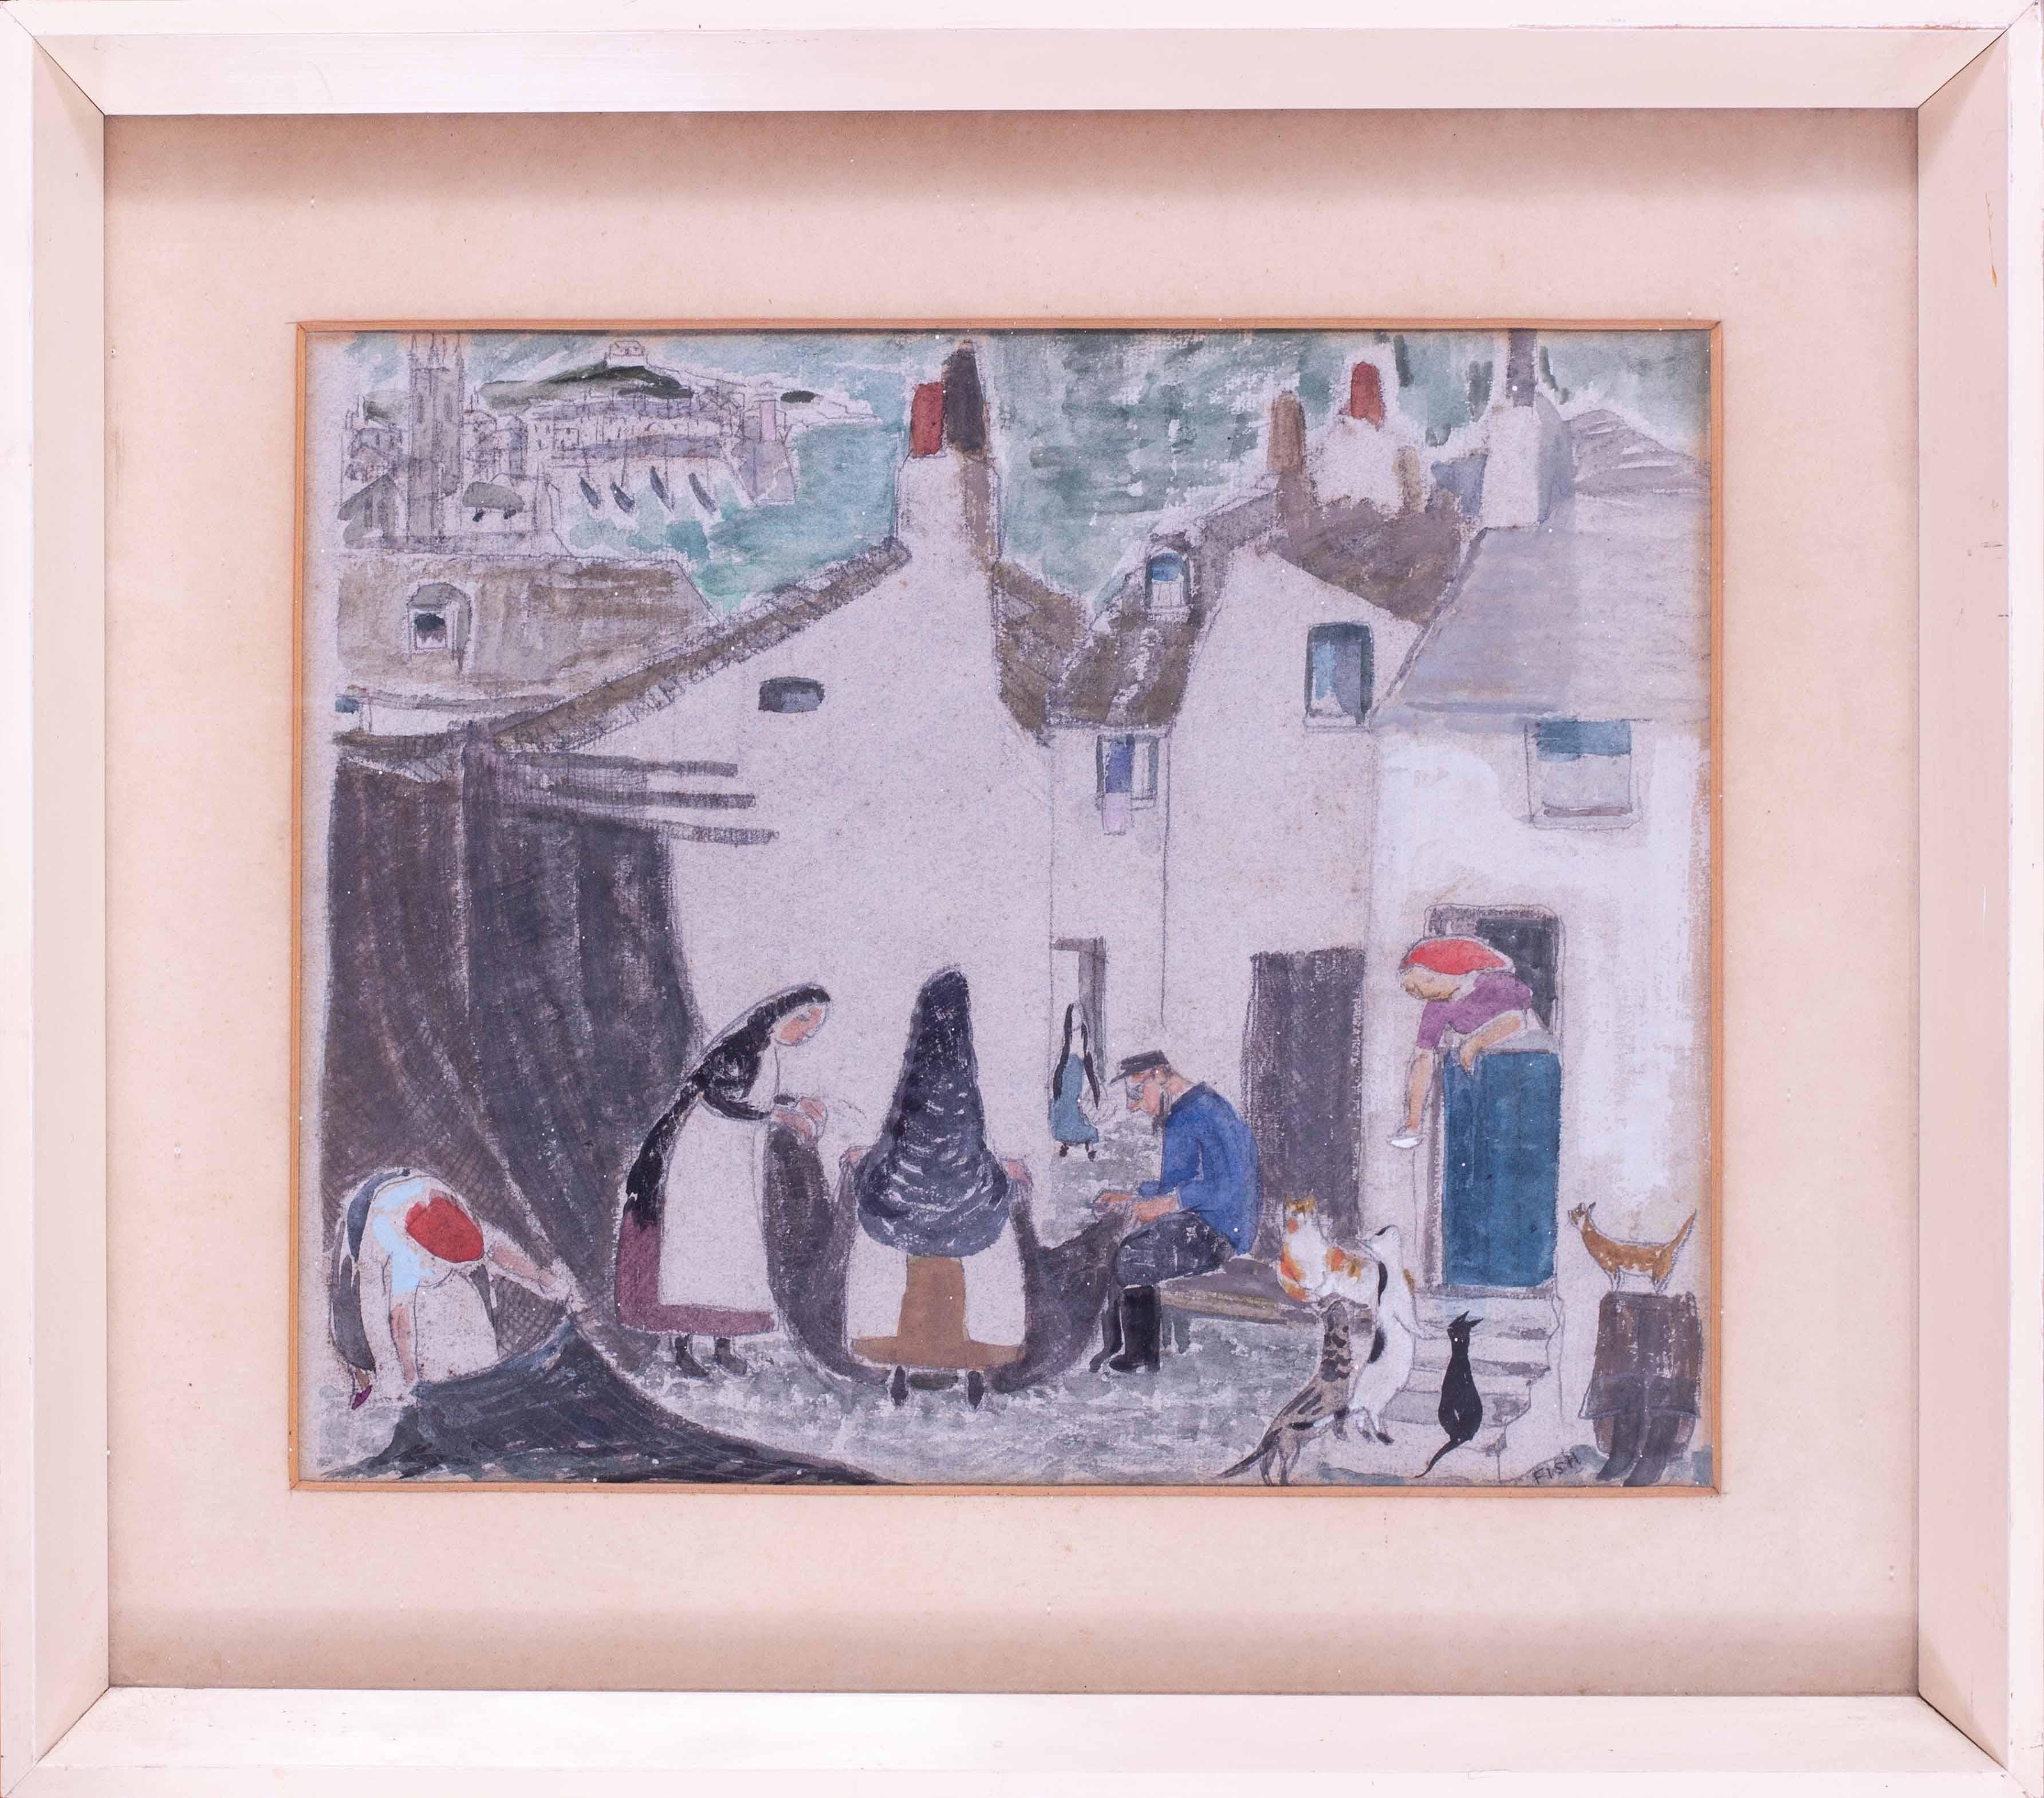 Szene "The Cats of St. Ives" der britischen Künstlerin Anne Harriet (Sefton) Fish 